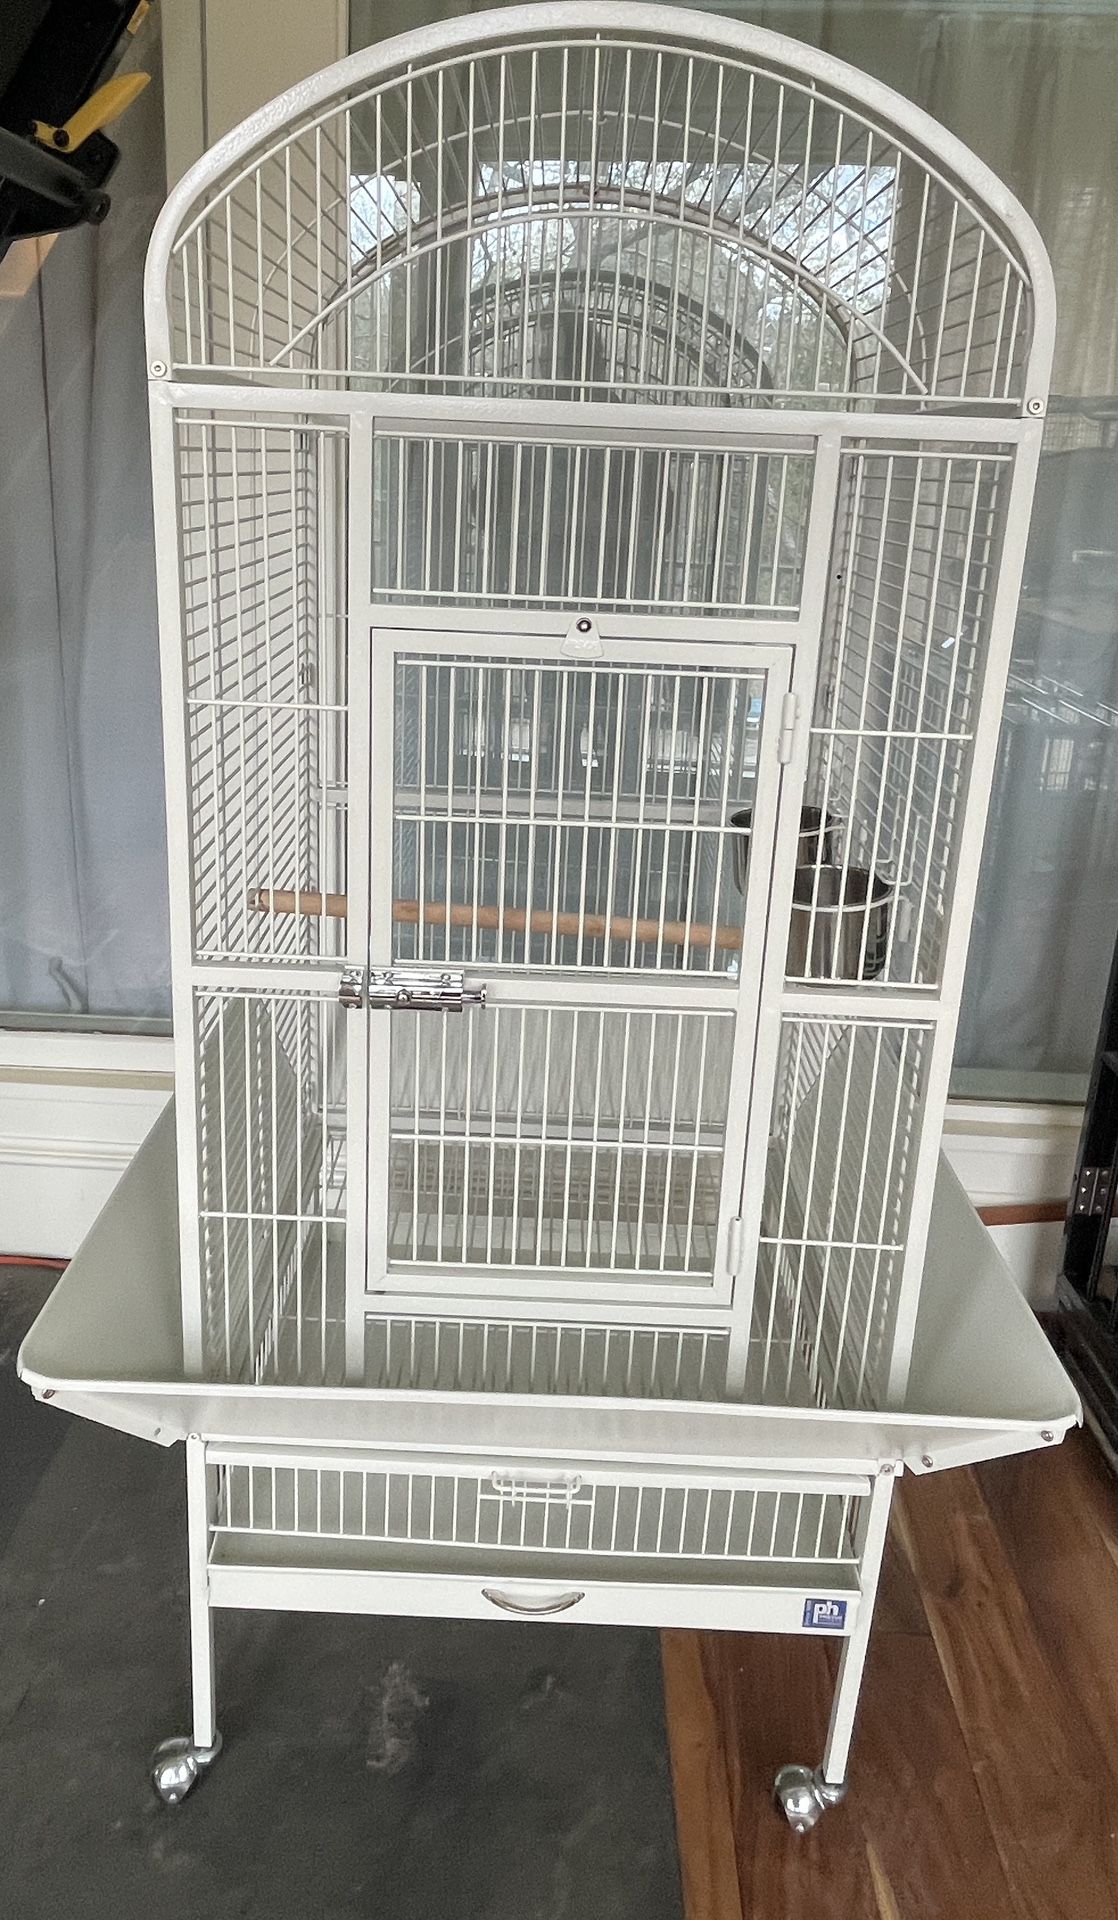 NEW Prevue Bird Cage